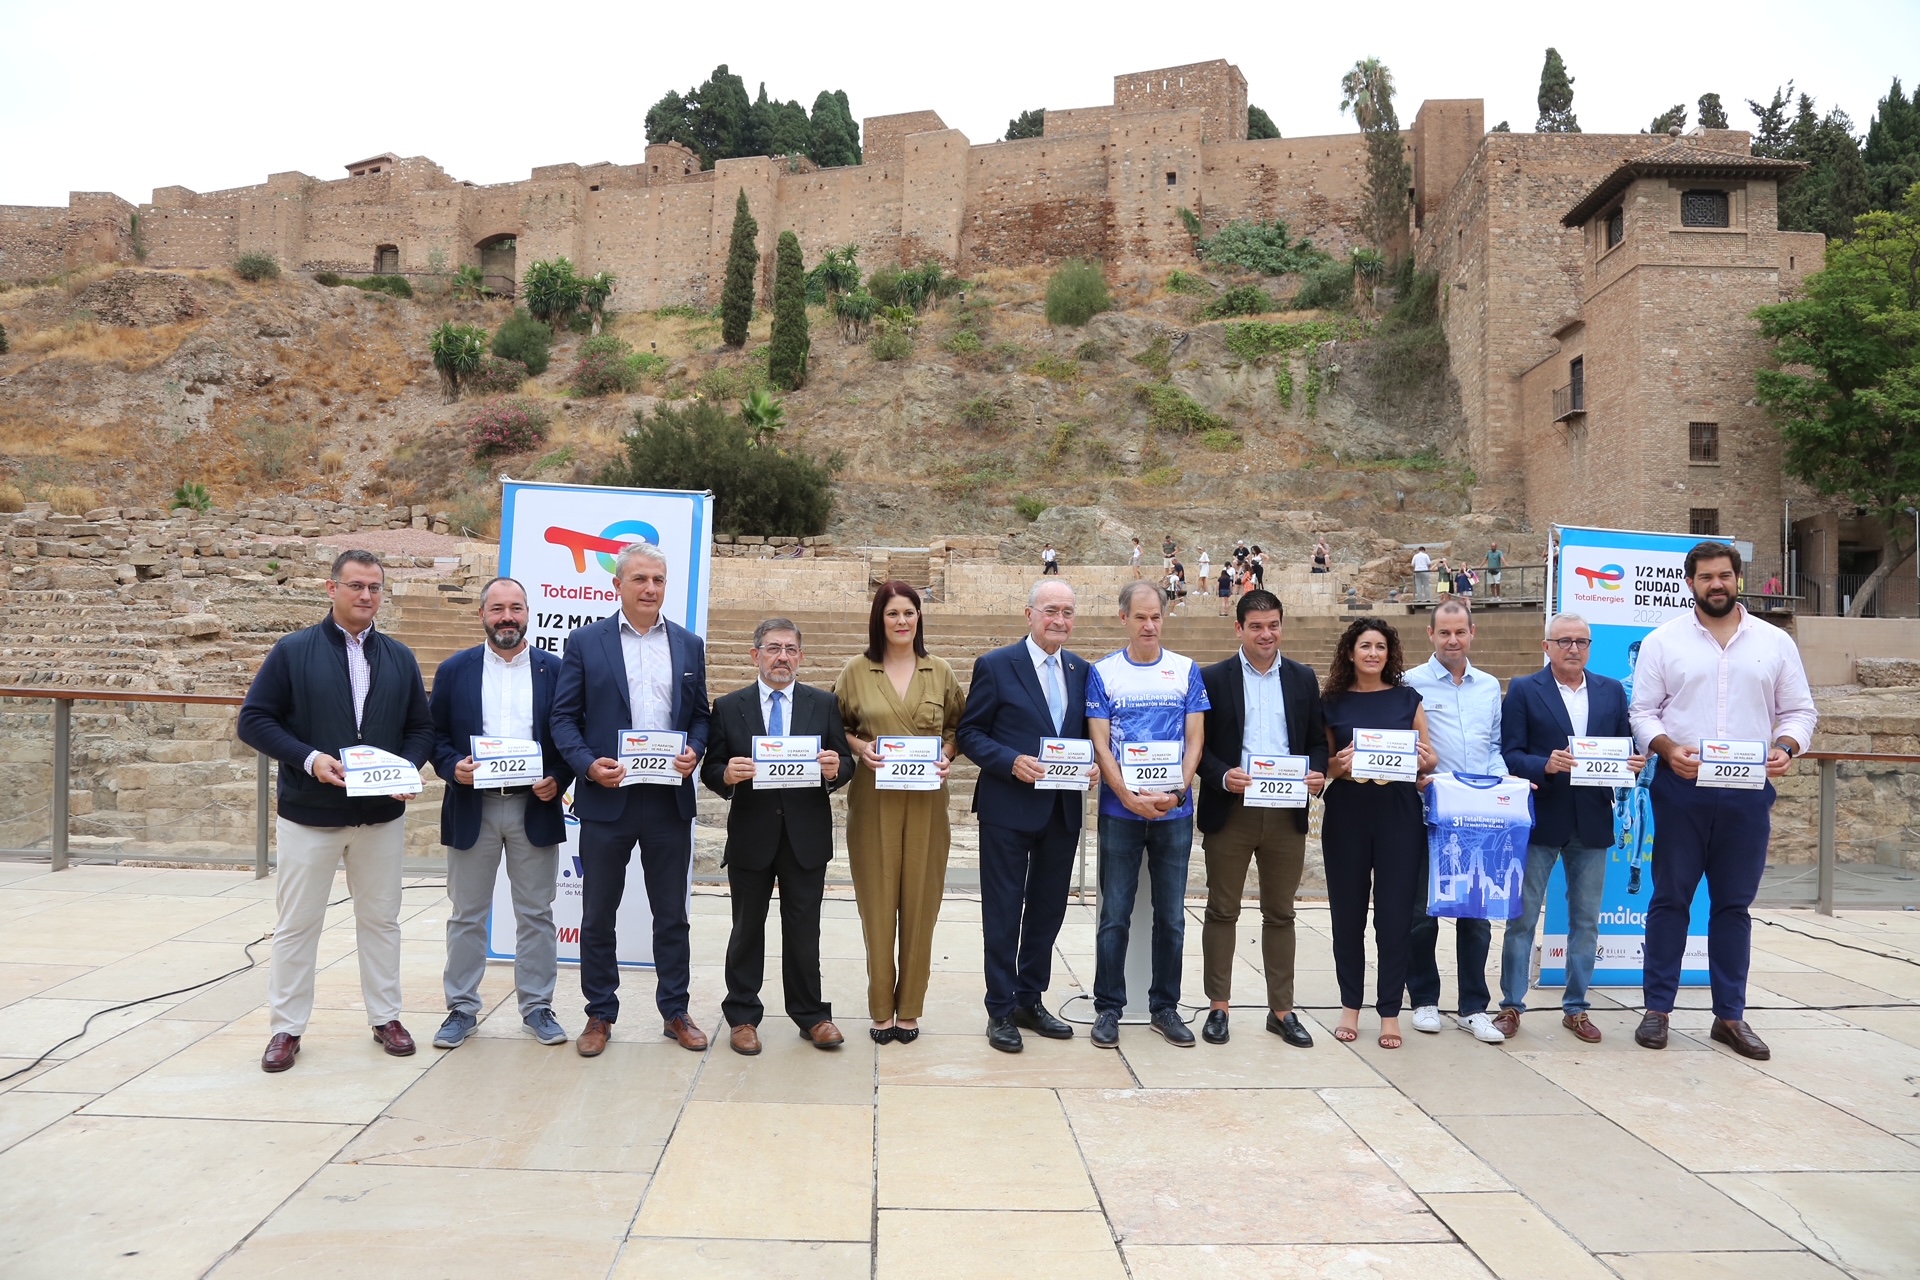 Nuevo recorrido, más rápido y
amplio, para el TotalEnergies Medio
Maratón Ciudad de Málaga